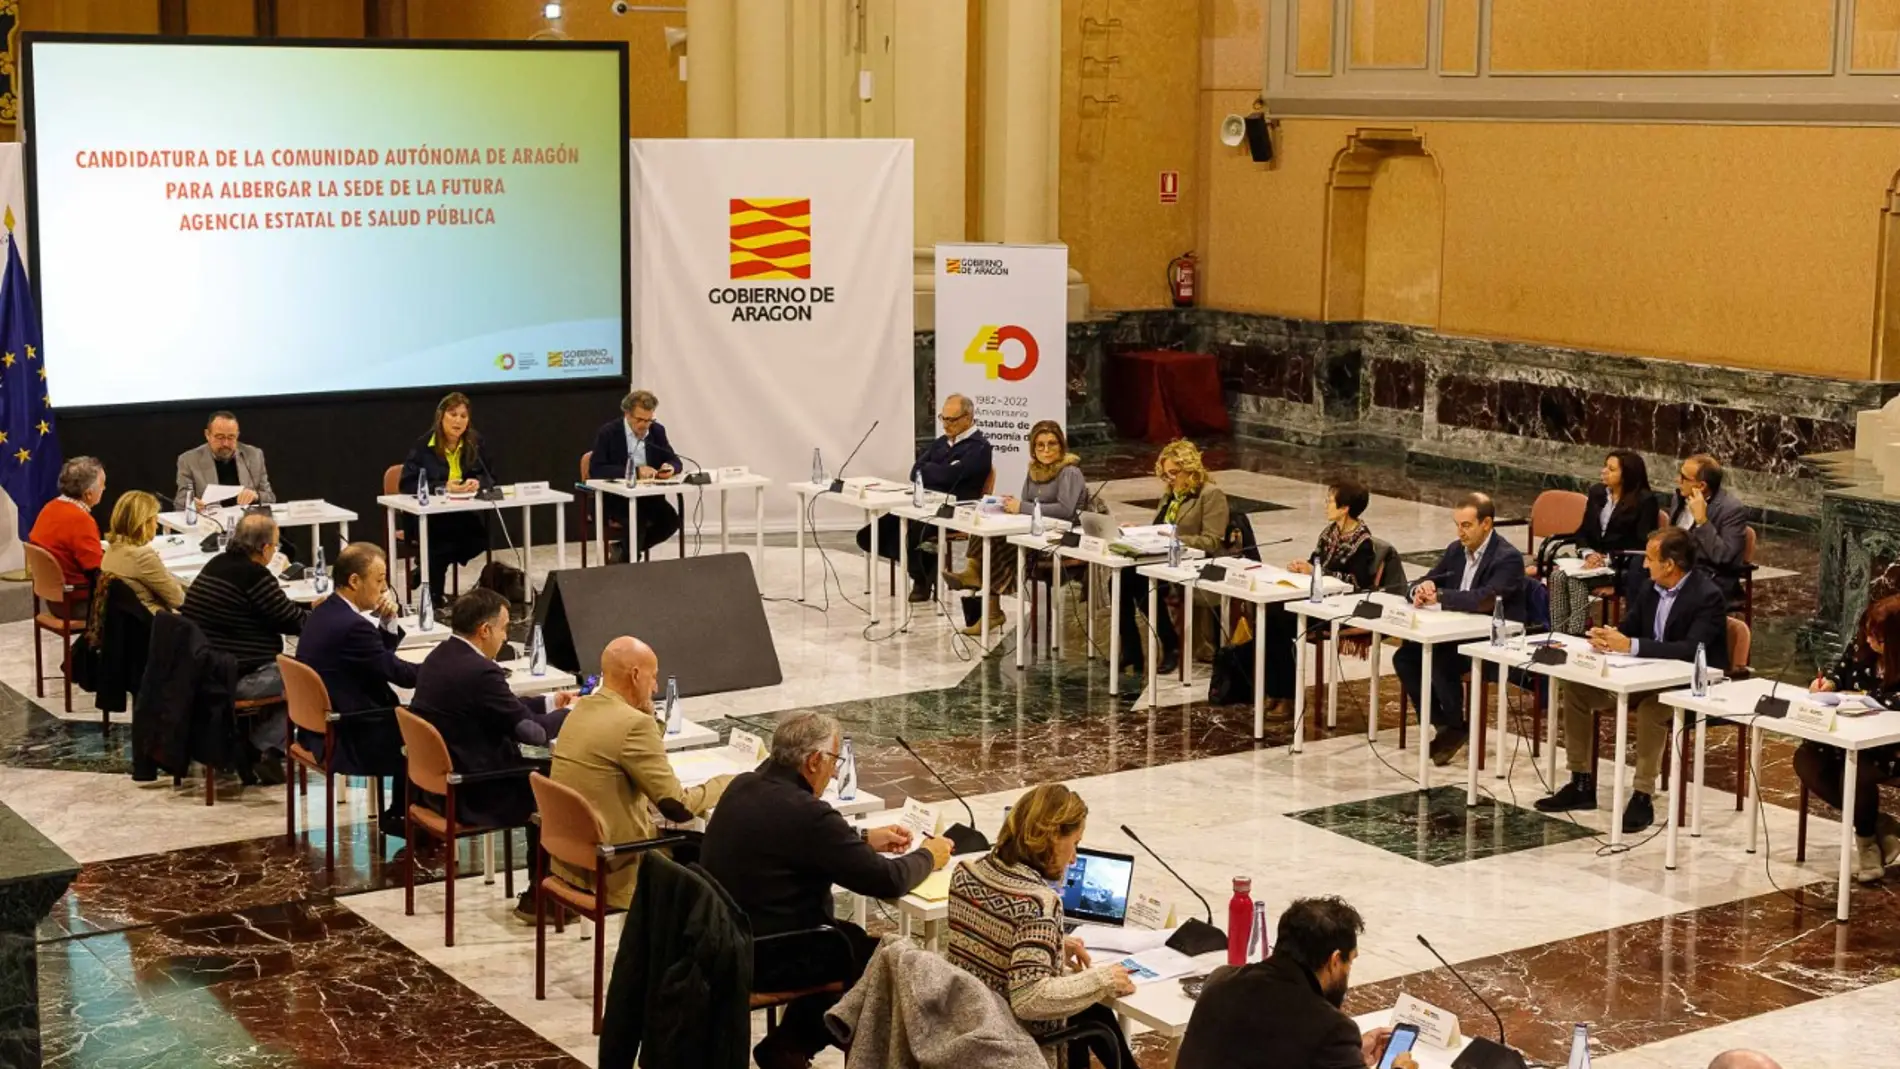 Reunión de la candidatura aragonesa de la Agencia Estatal de Salud Pública